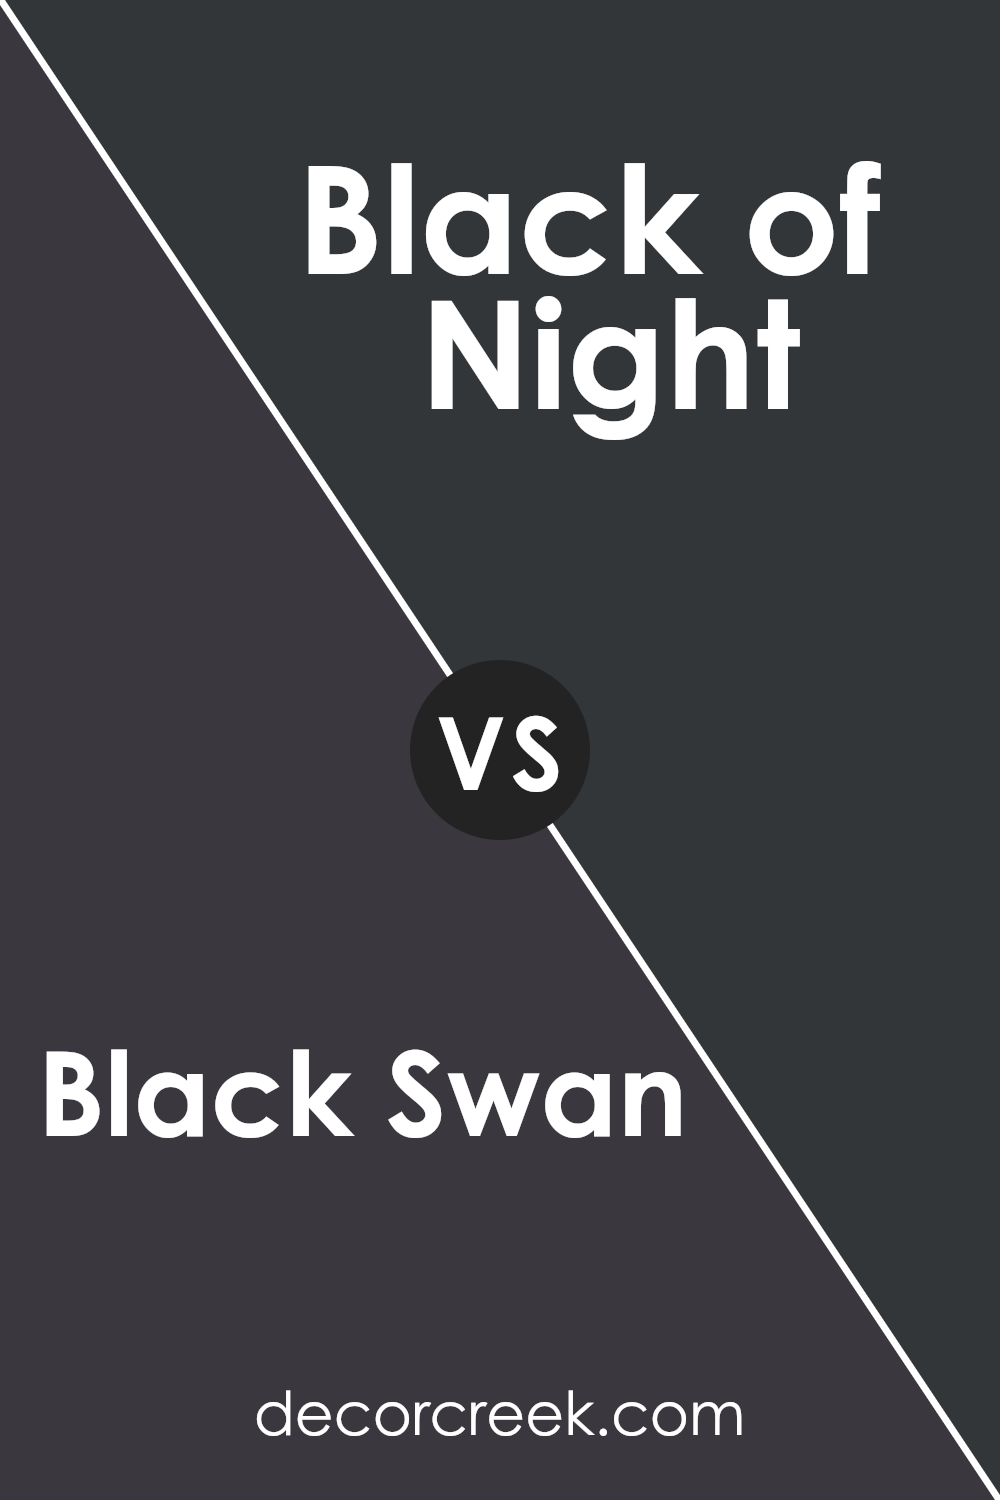 black_swan_sw_6279_vs_black_of_night_sw_6993